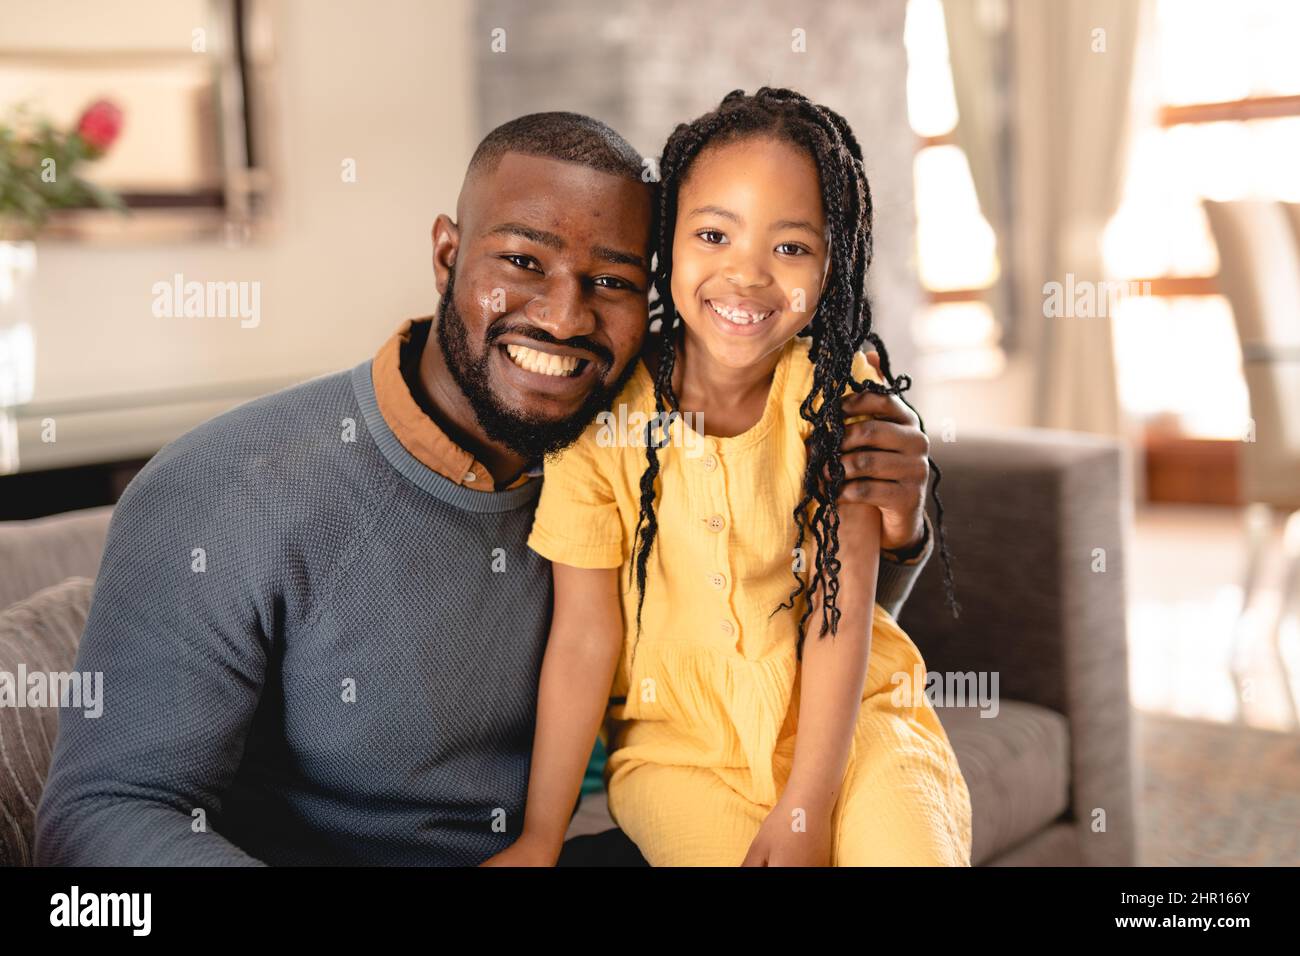 Ritratto di uomo afroamericano sorridente seduto con braccio intorno alla figlia sul divano in soggiorno Foto Stock